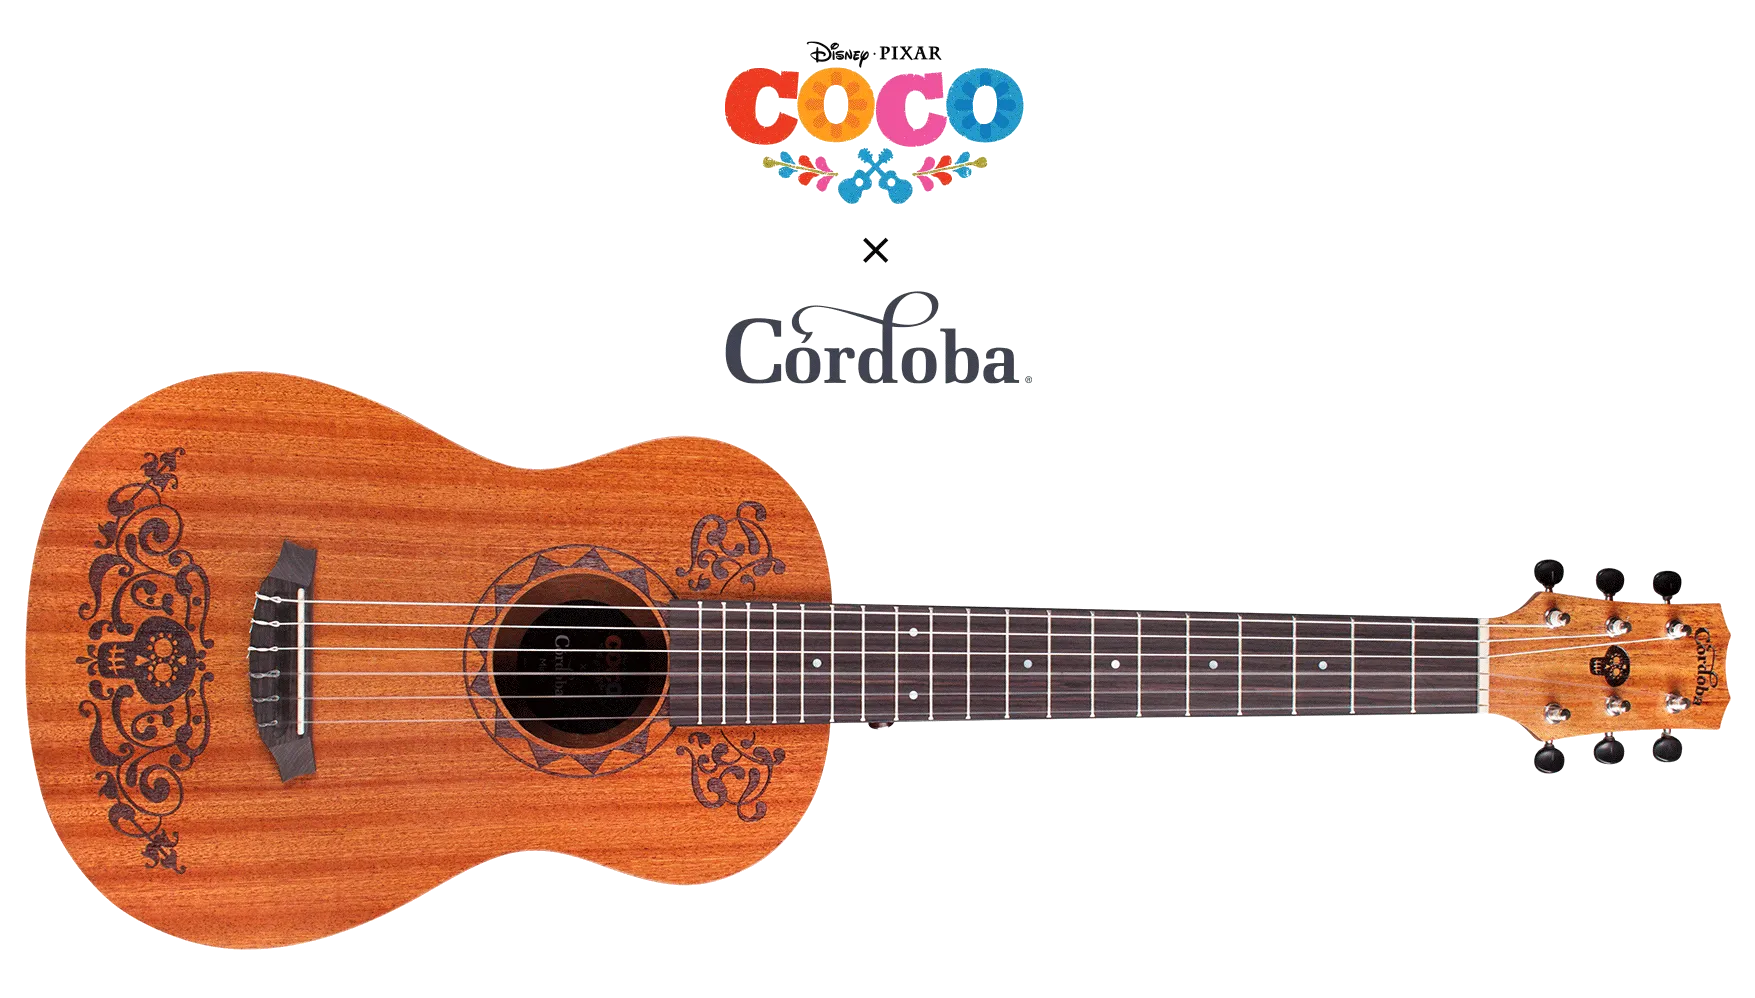 10,911円【限定生産・生産完了品】★美品★Coco x Córdoba ミニガットギター